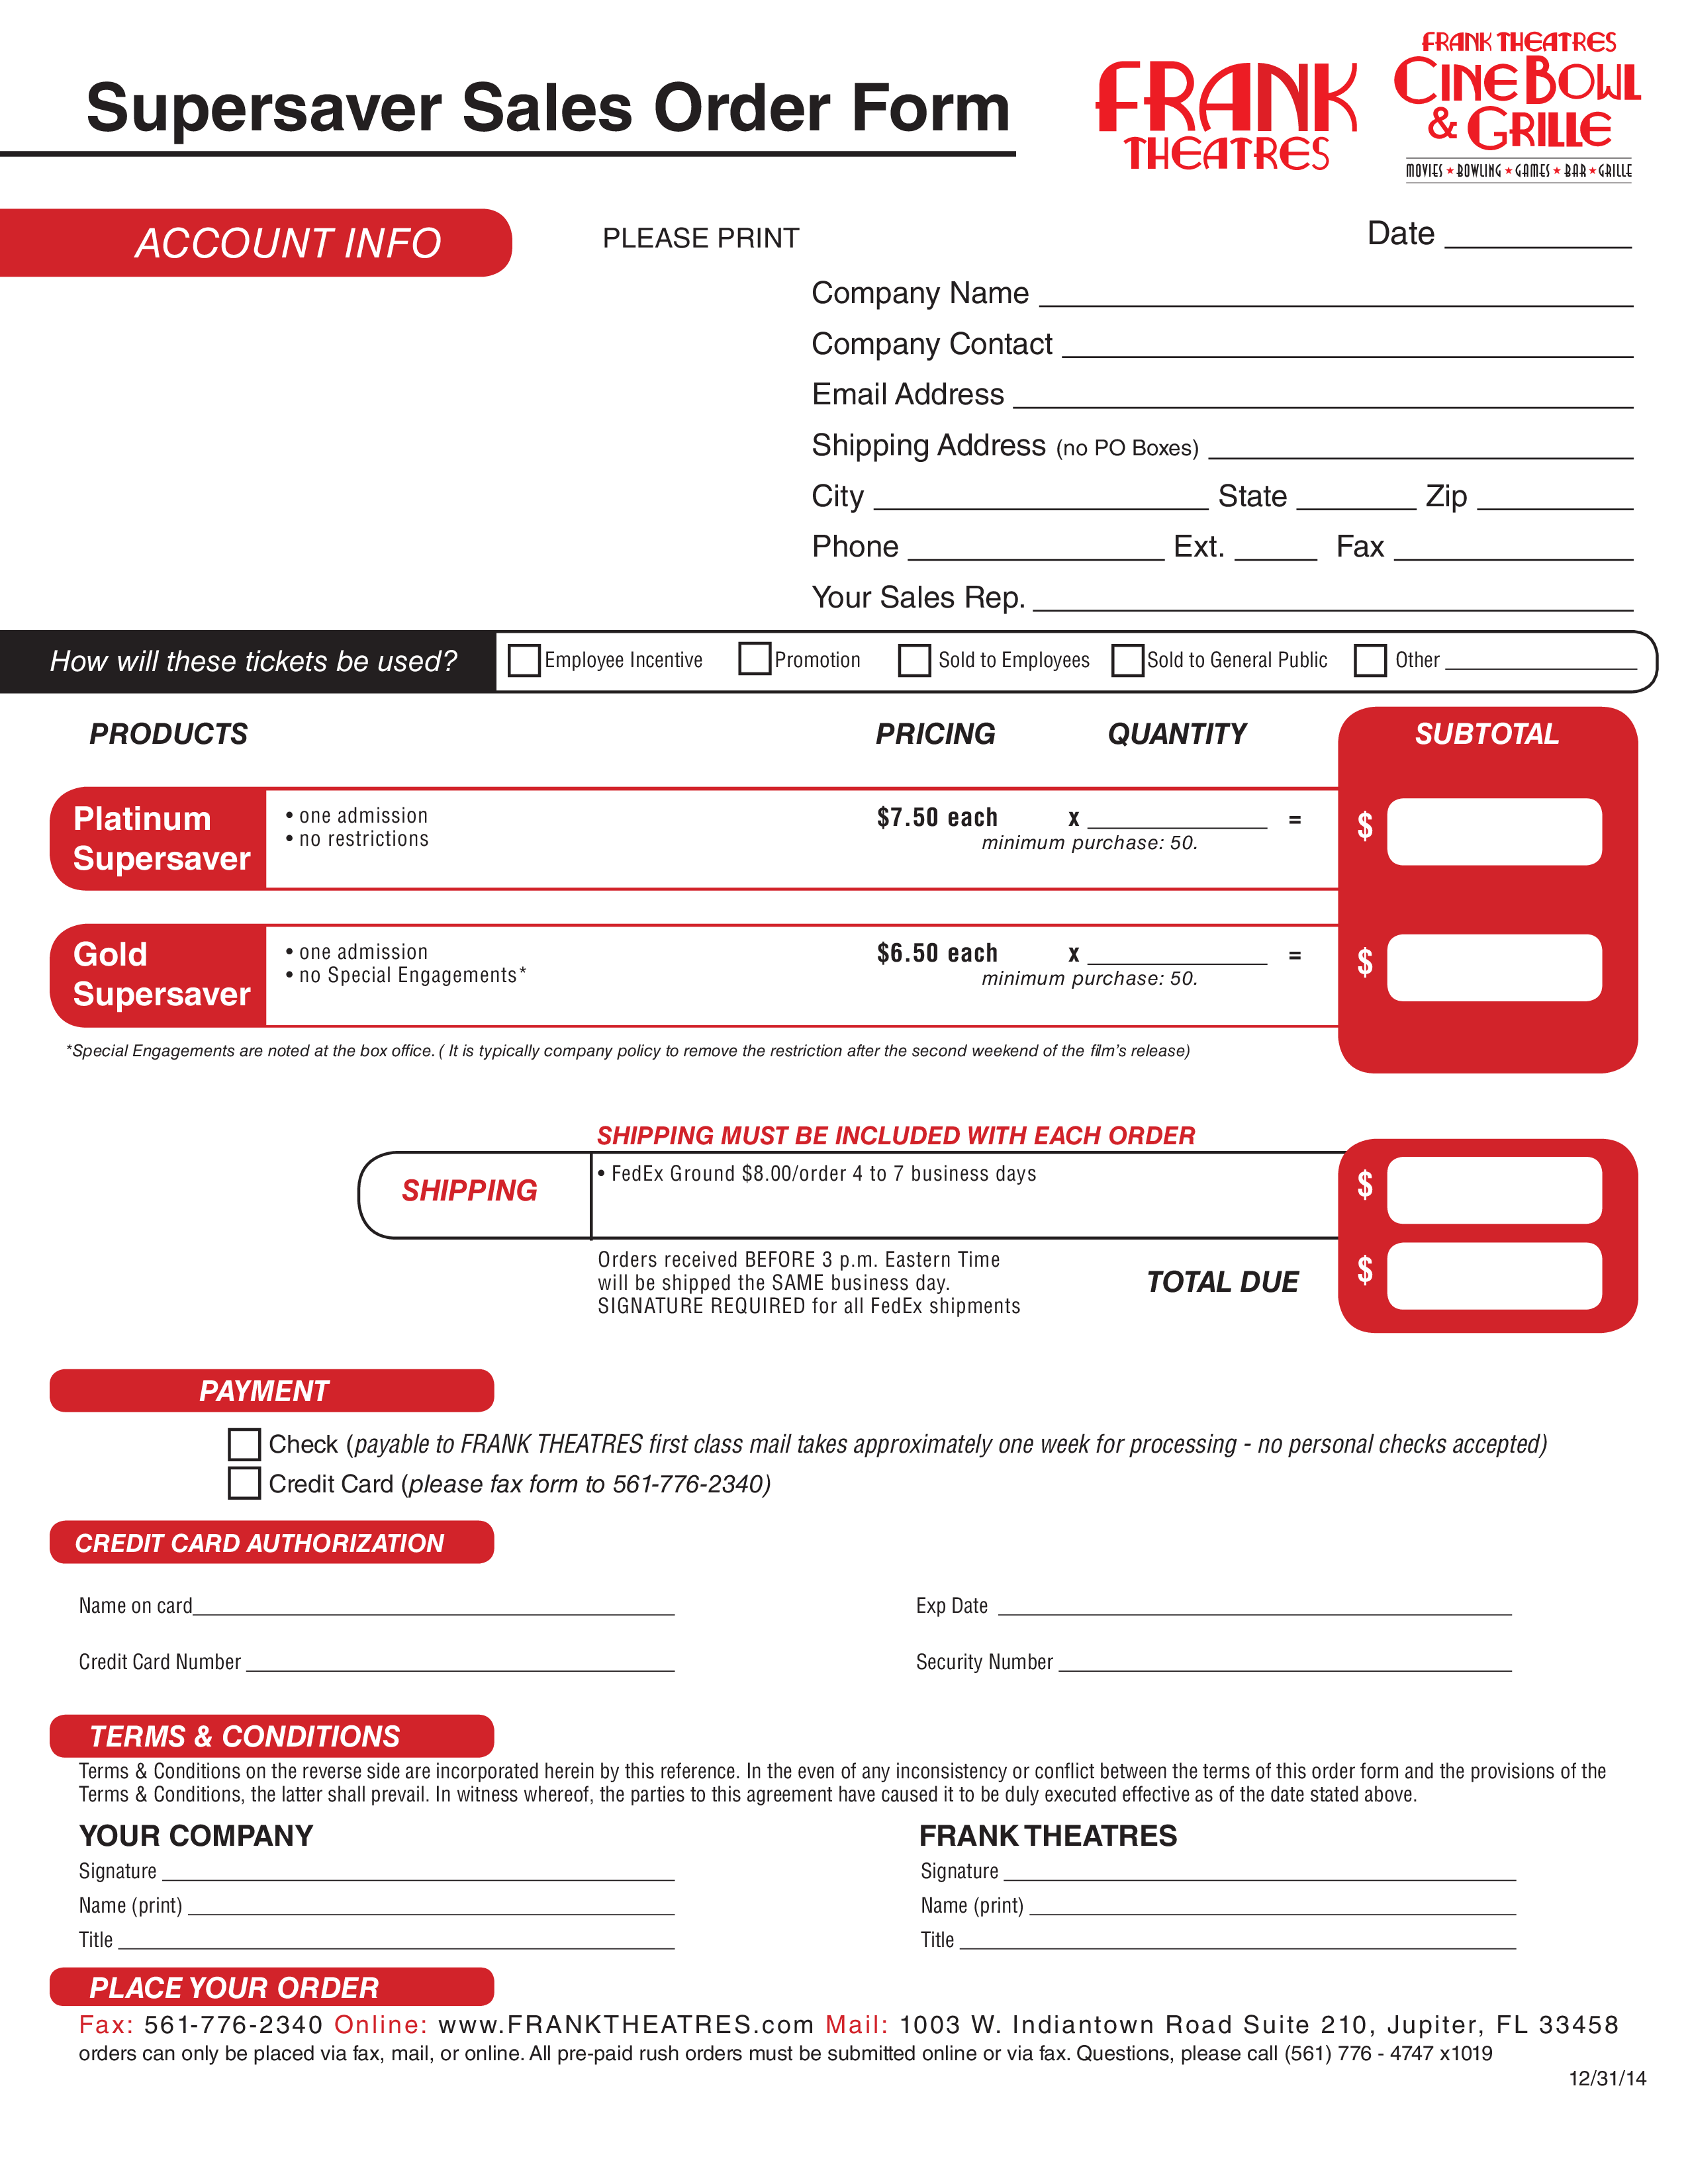 Super Saver Sales Order Form Sample main image